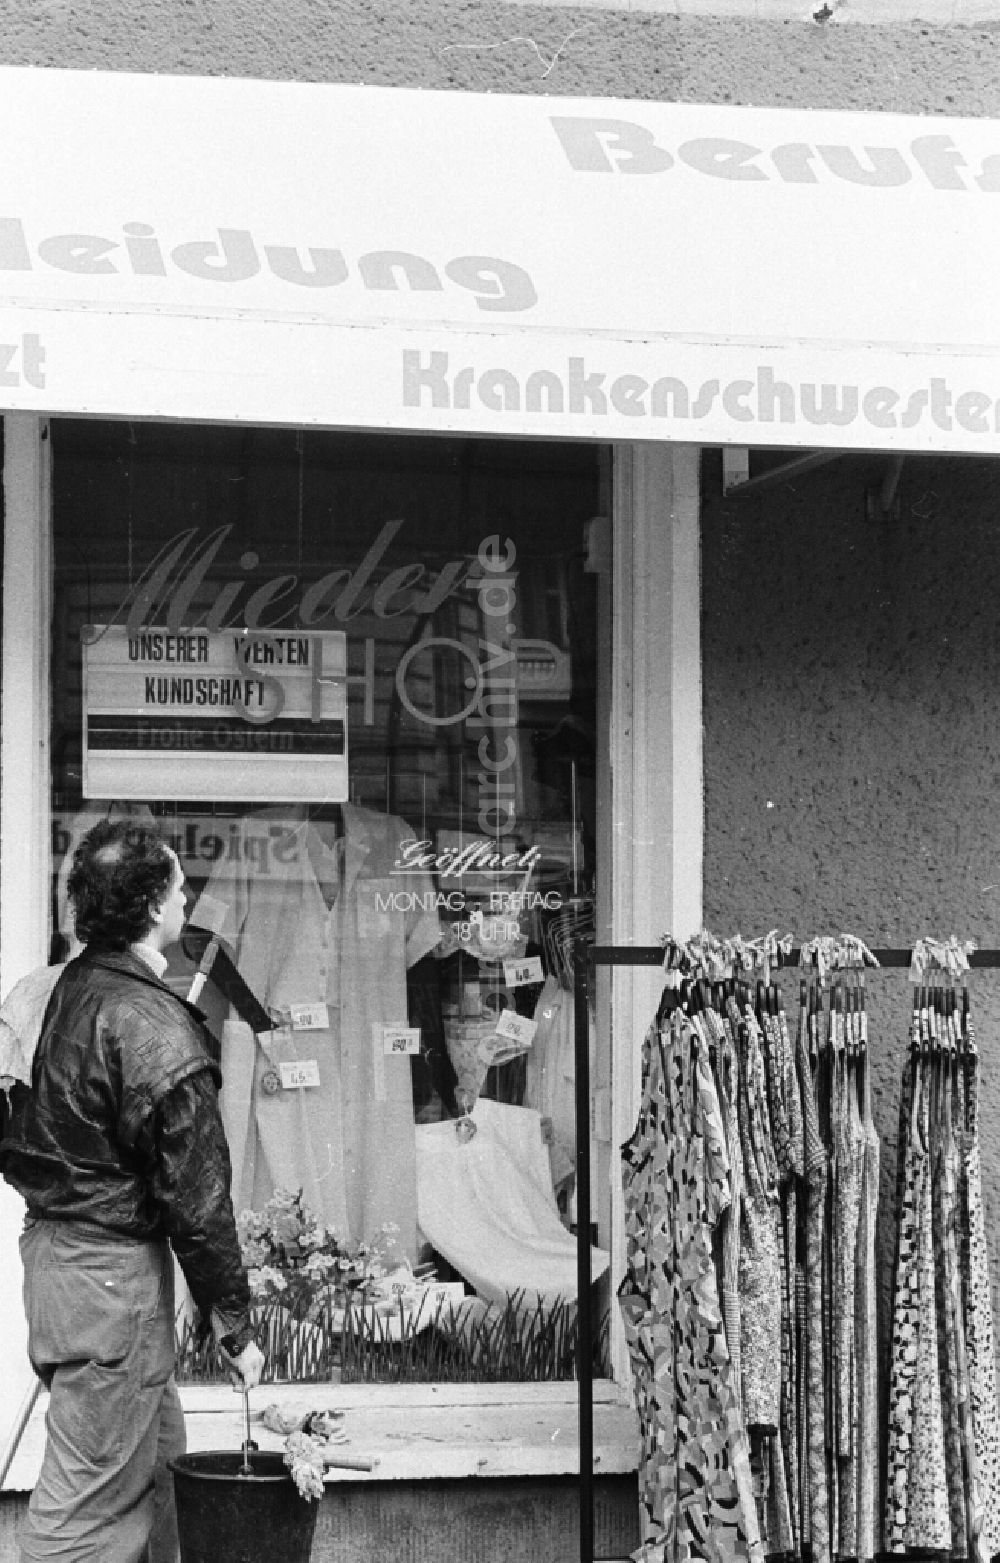 DDR-Bildarchiv: Berlin - Laden für Miederwaren und Arbeitsbekleidung in Berlin Friedrichshain, der ehemaligen Hauptstadt der DDR, Deutsche Demokratische Republik